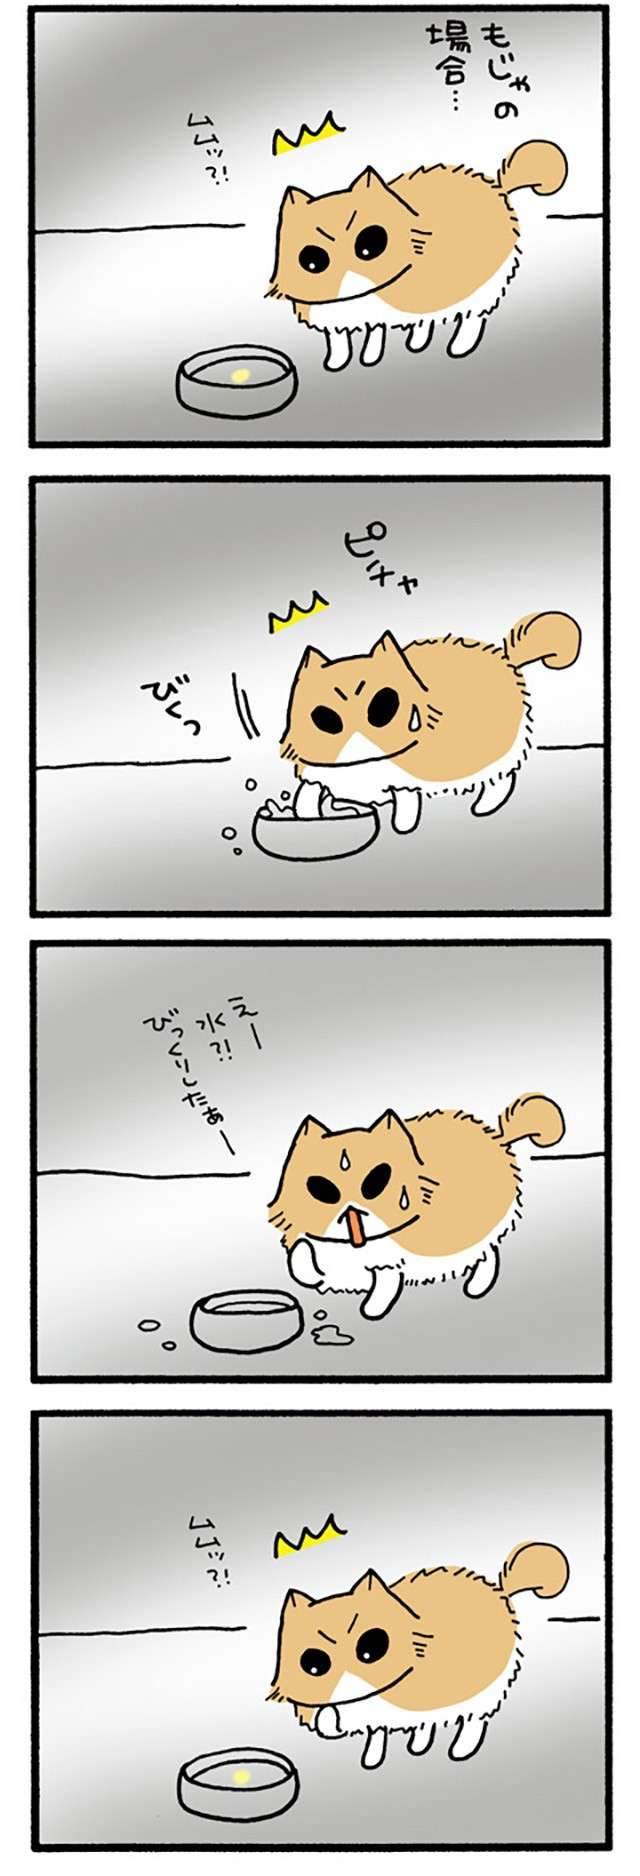 猫の学習能力。この遊びをしかけると毎回、新鮮なリアクションが...／うちの3ねこ uchinosanneko3_022_1.jpg